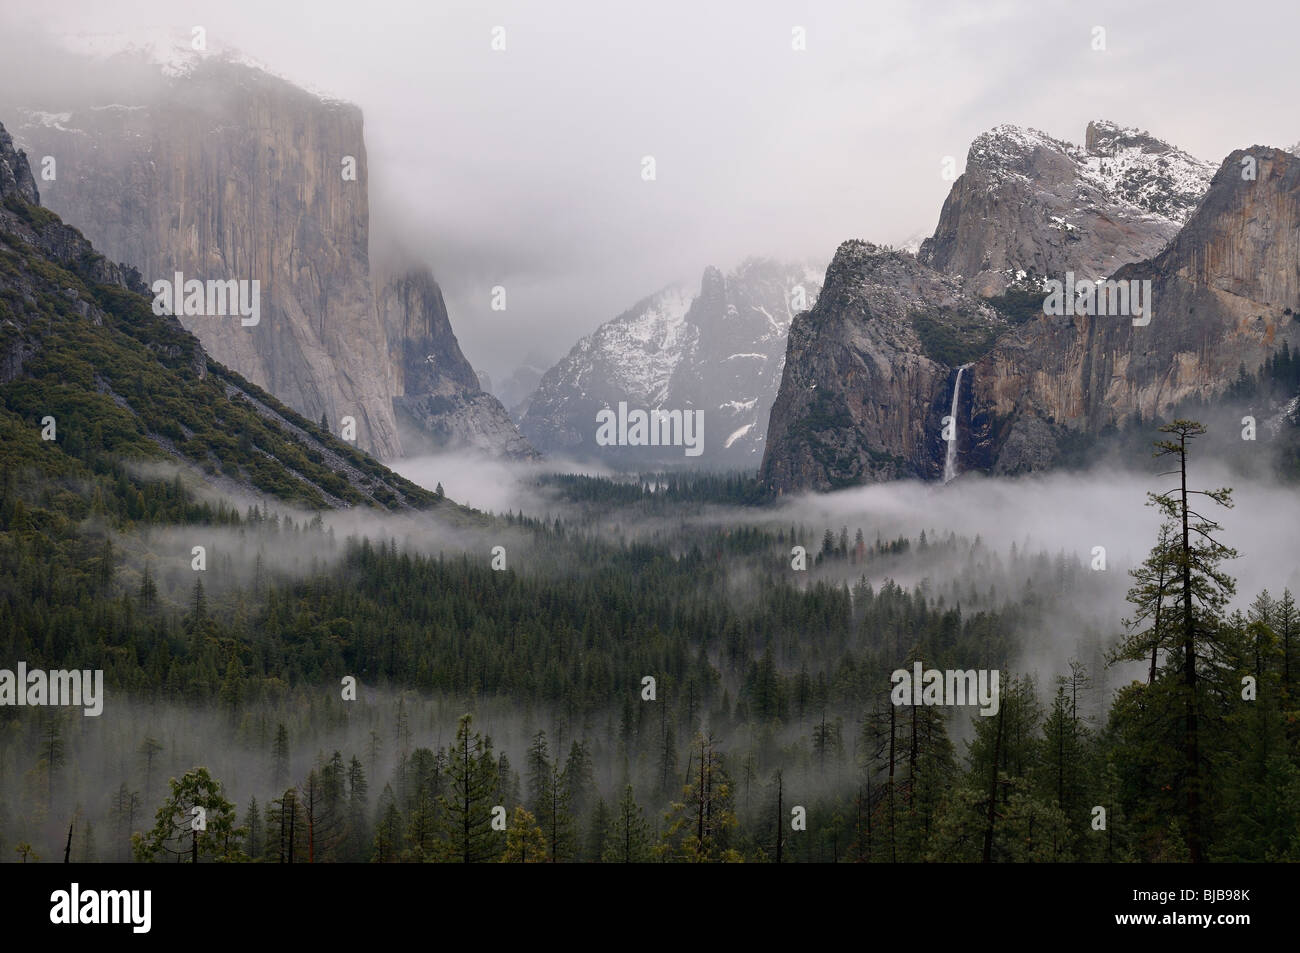 Wolken und Nebel im Yosemite Valley mit bridalveil Fall nach einem Winter regen Sturm aus Tunnel view Yosemite National Park Kalifornien USA gesehen Stockfoto